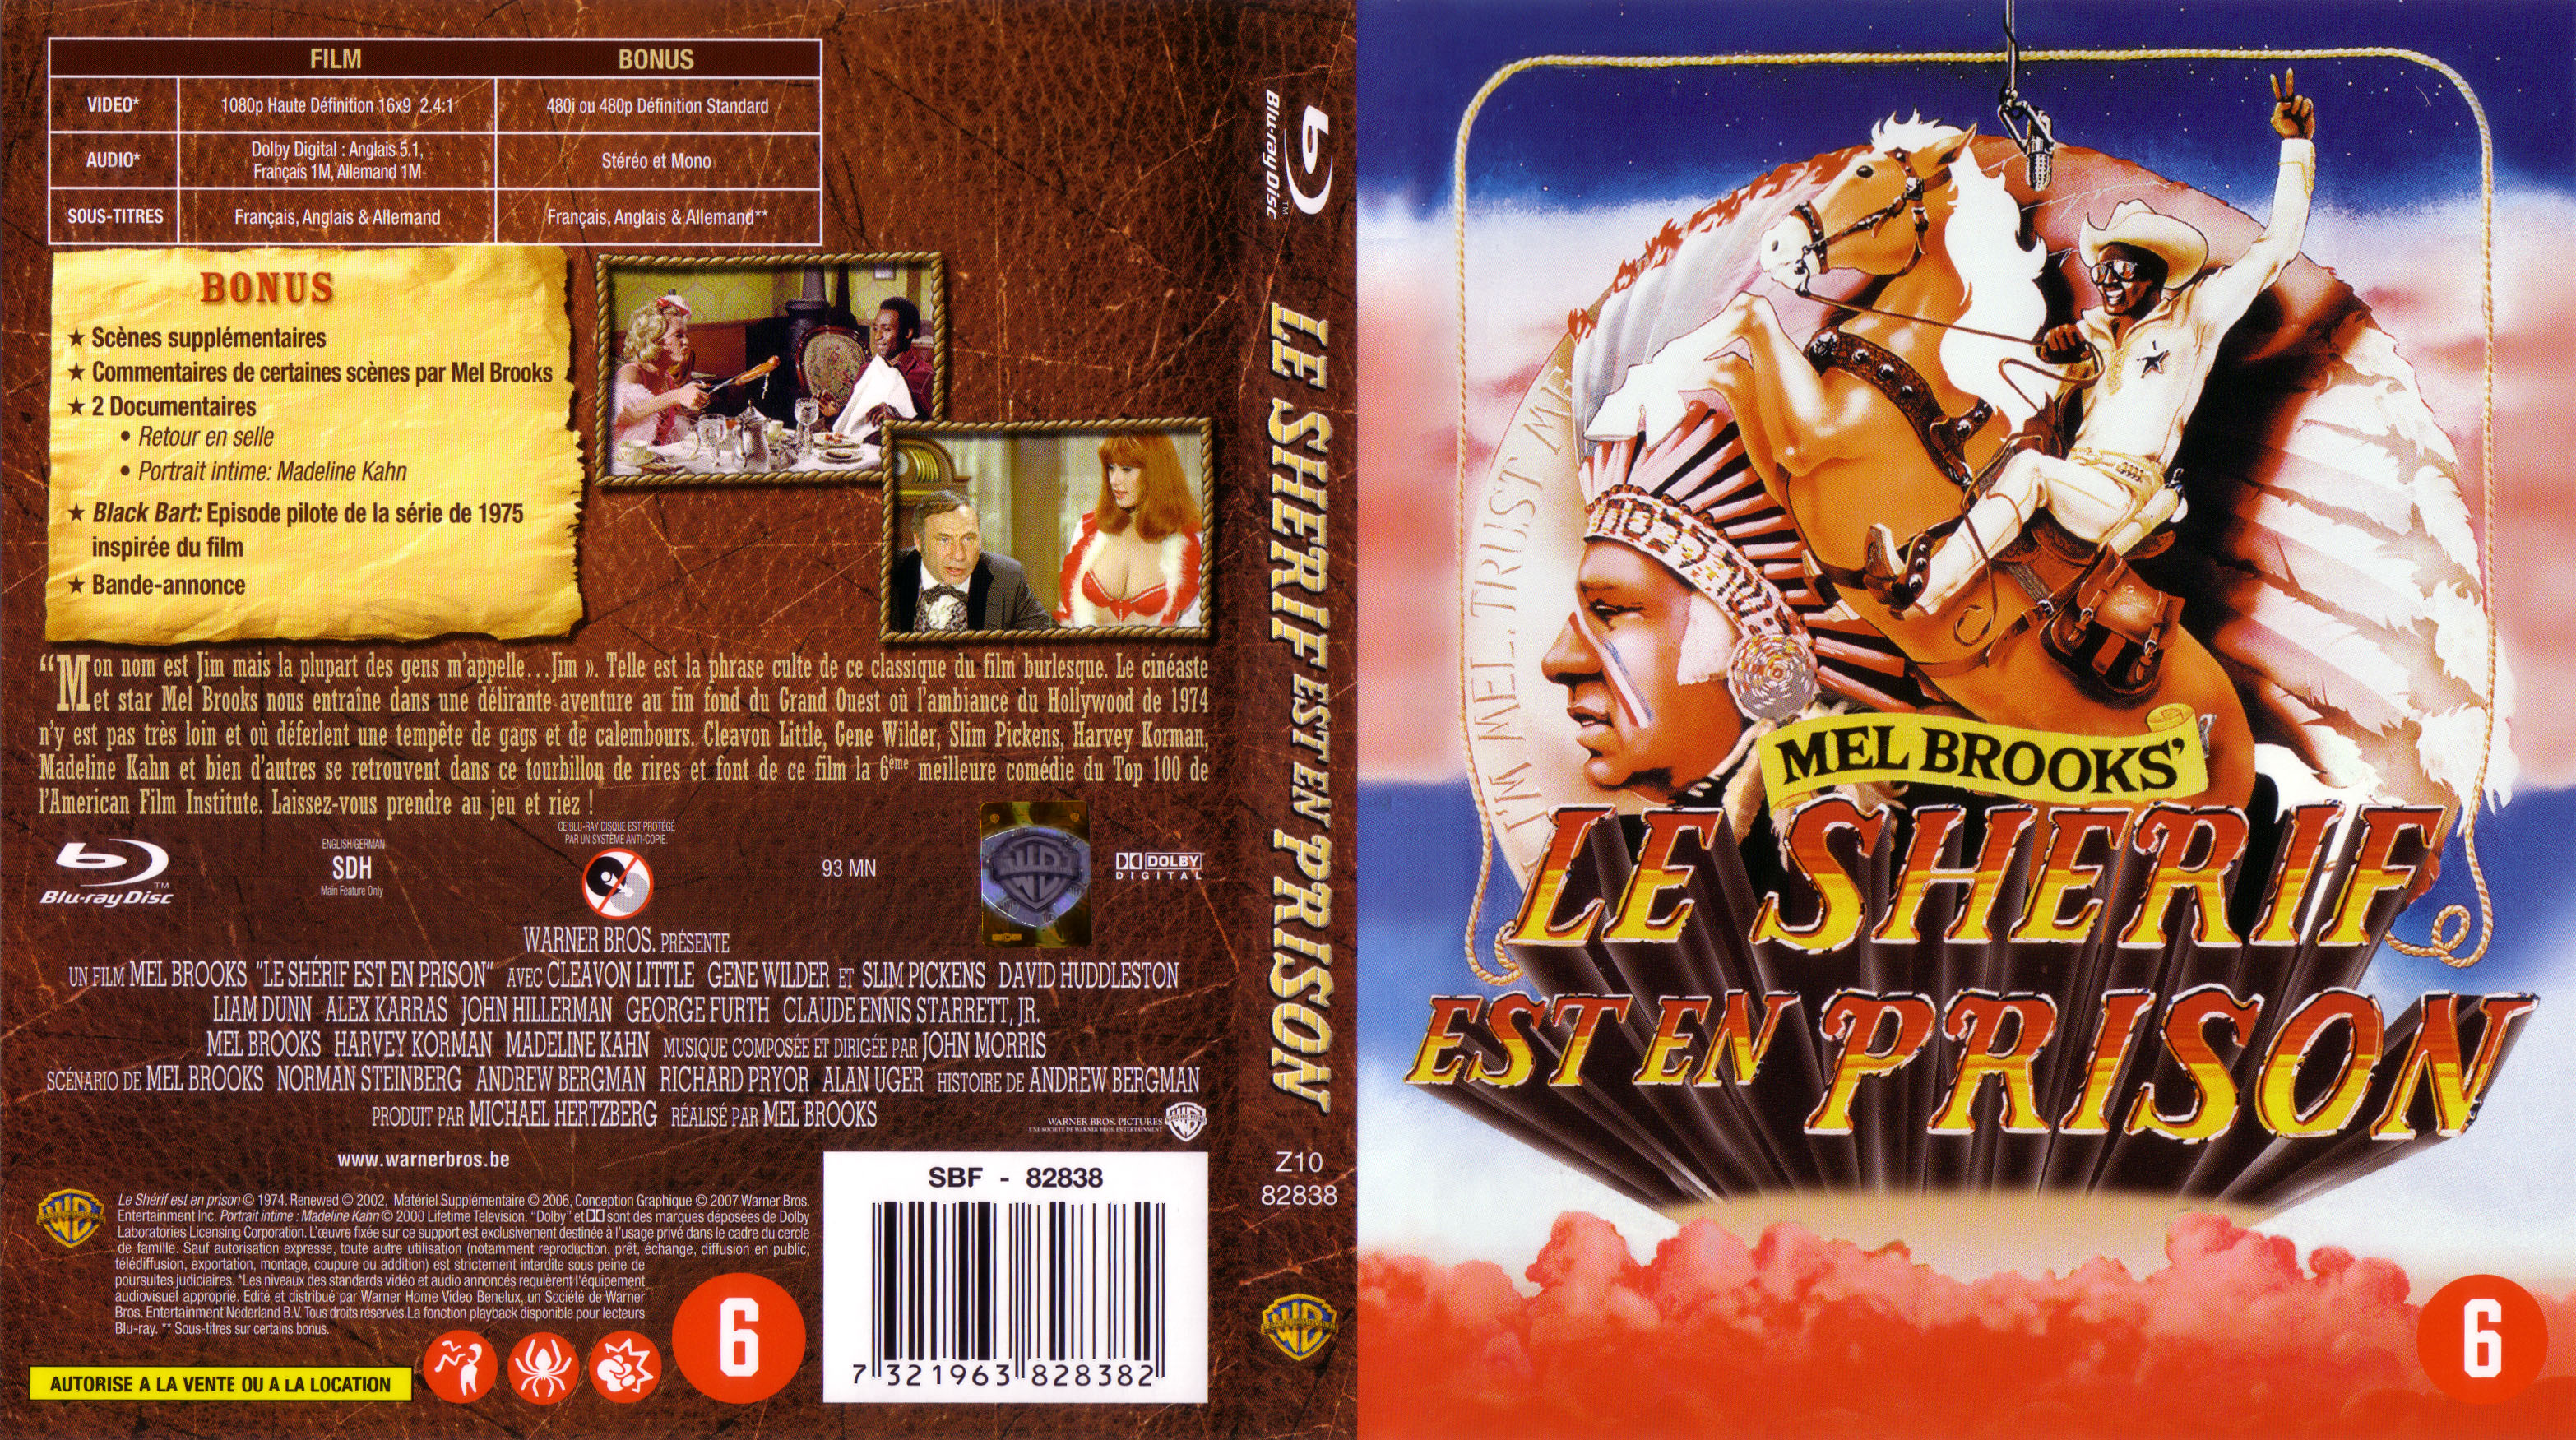 Jaquette DVD Le shrif est en prison (BLU-RAY)